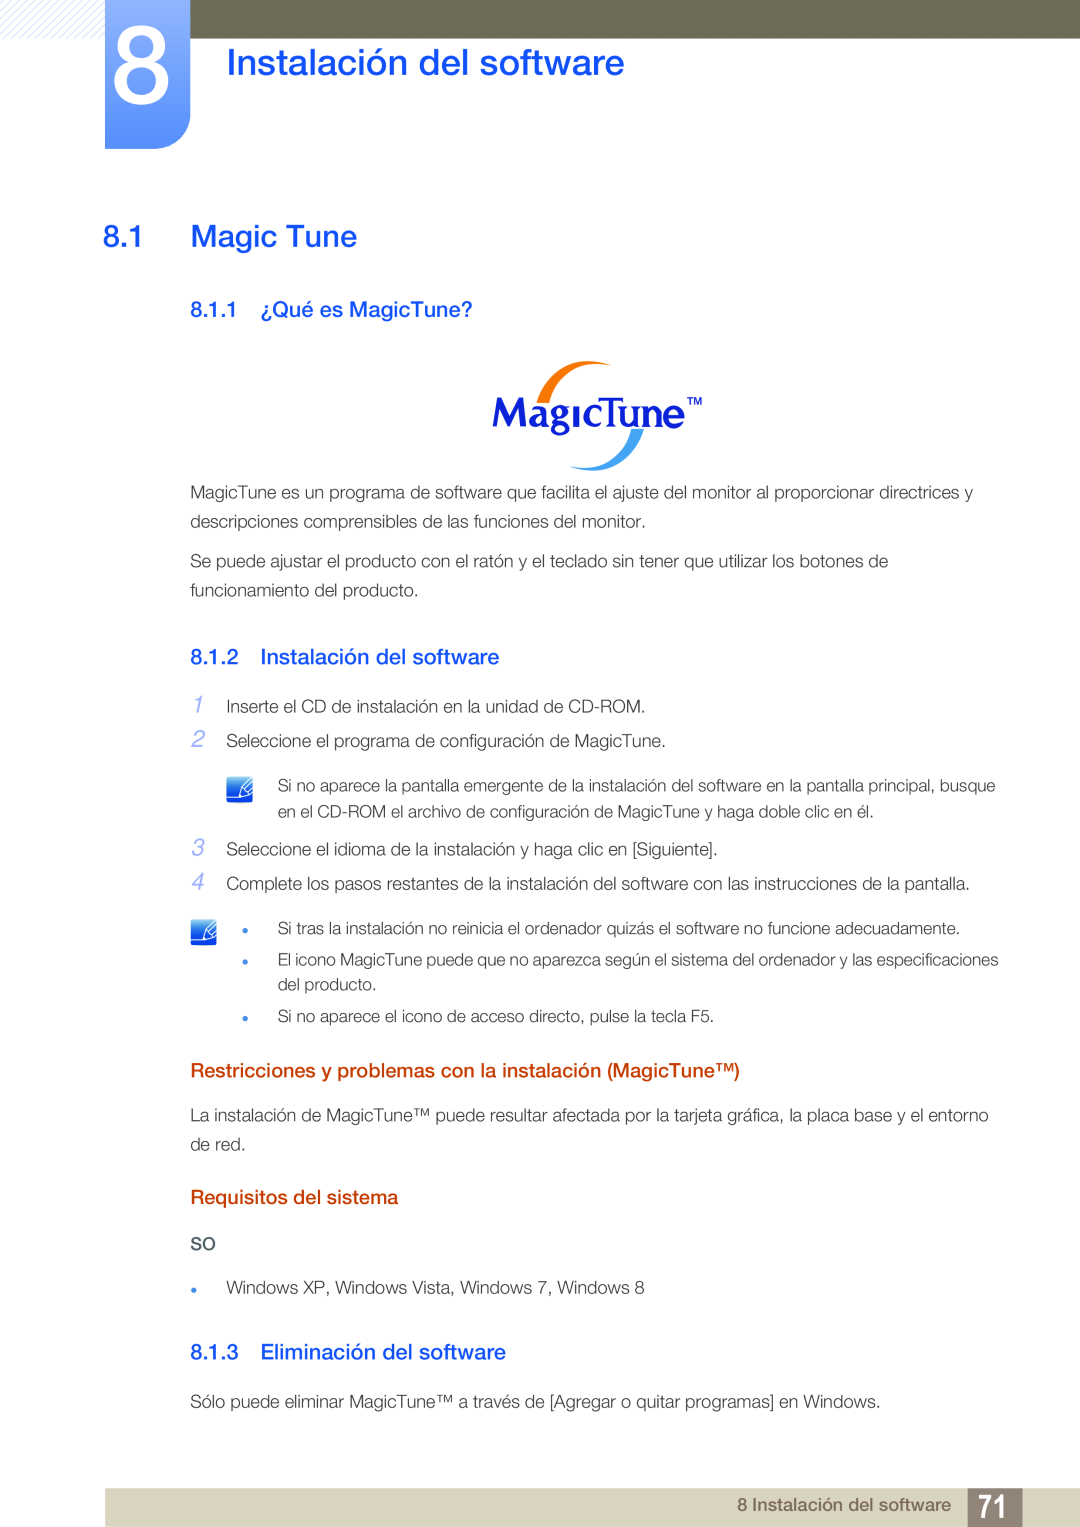 Samsung LS24C45KMS/EN manual Instalación del software, Magic Tune, 8.1.1 ¿Qué es MagicTune?, Eliminación del software 